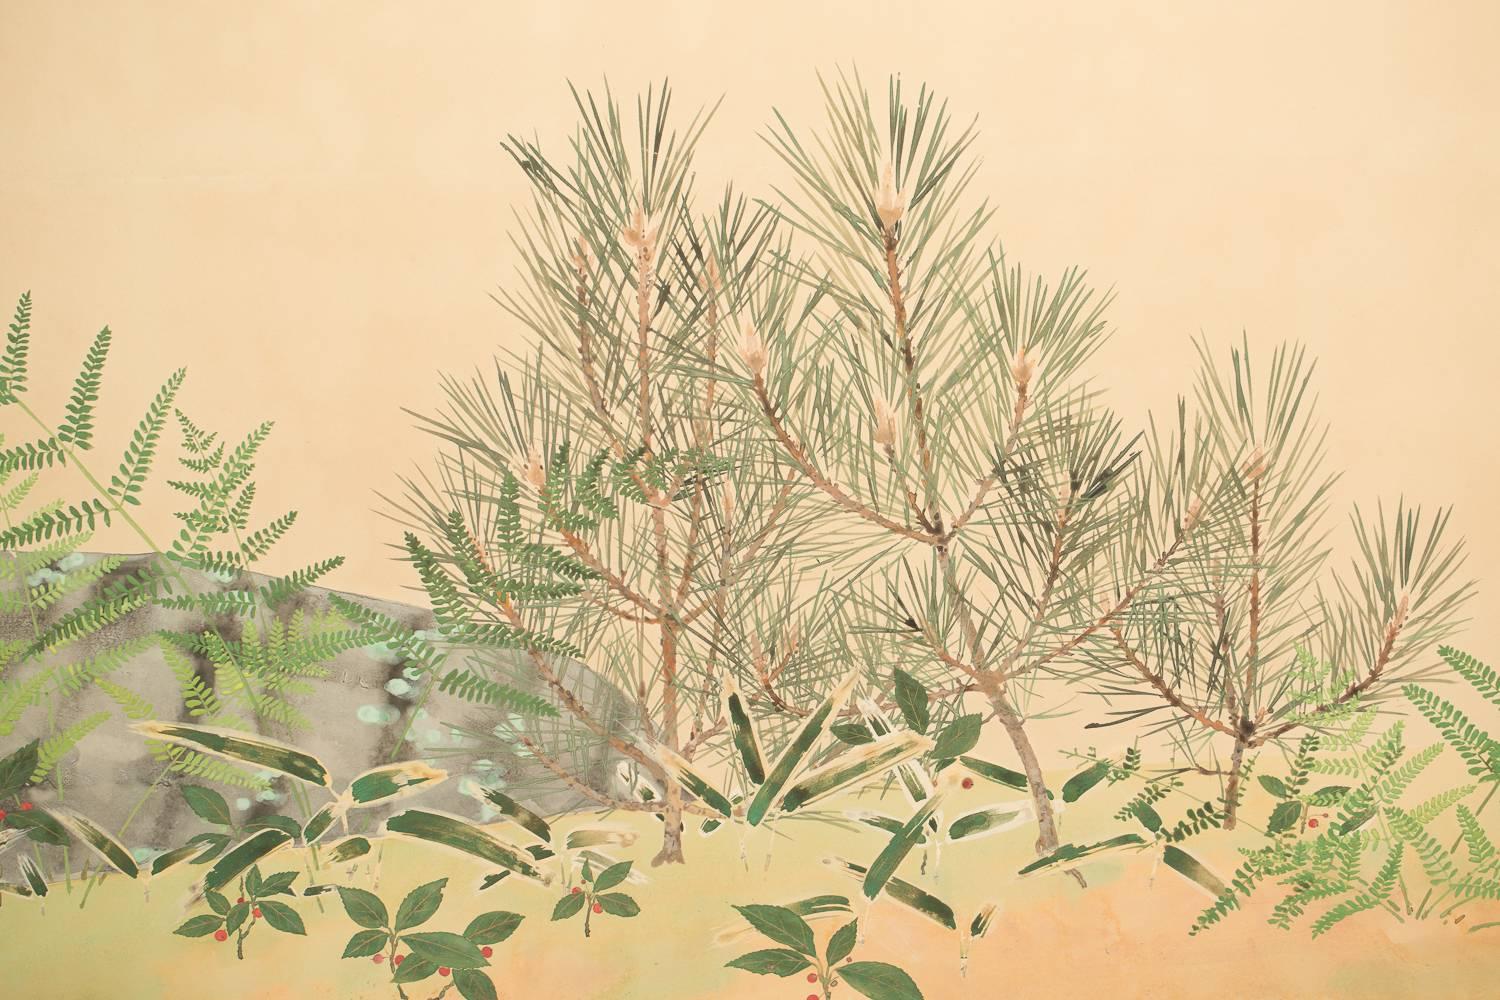 Zart auf Maulbeerpapier gemalt, Unterschrift und Siegel lauten: Shiko. Der Künstler Sakakibara Shiko (1895-1969) wurde in Kyoto geboren.

Maße: 28,5